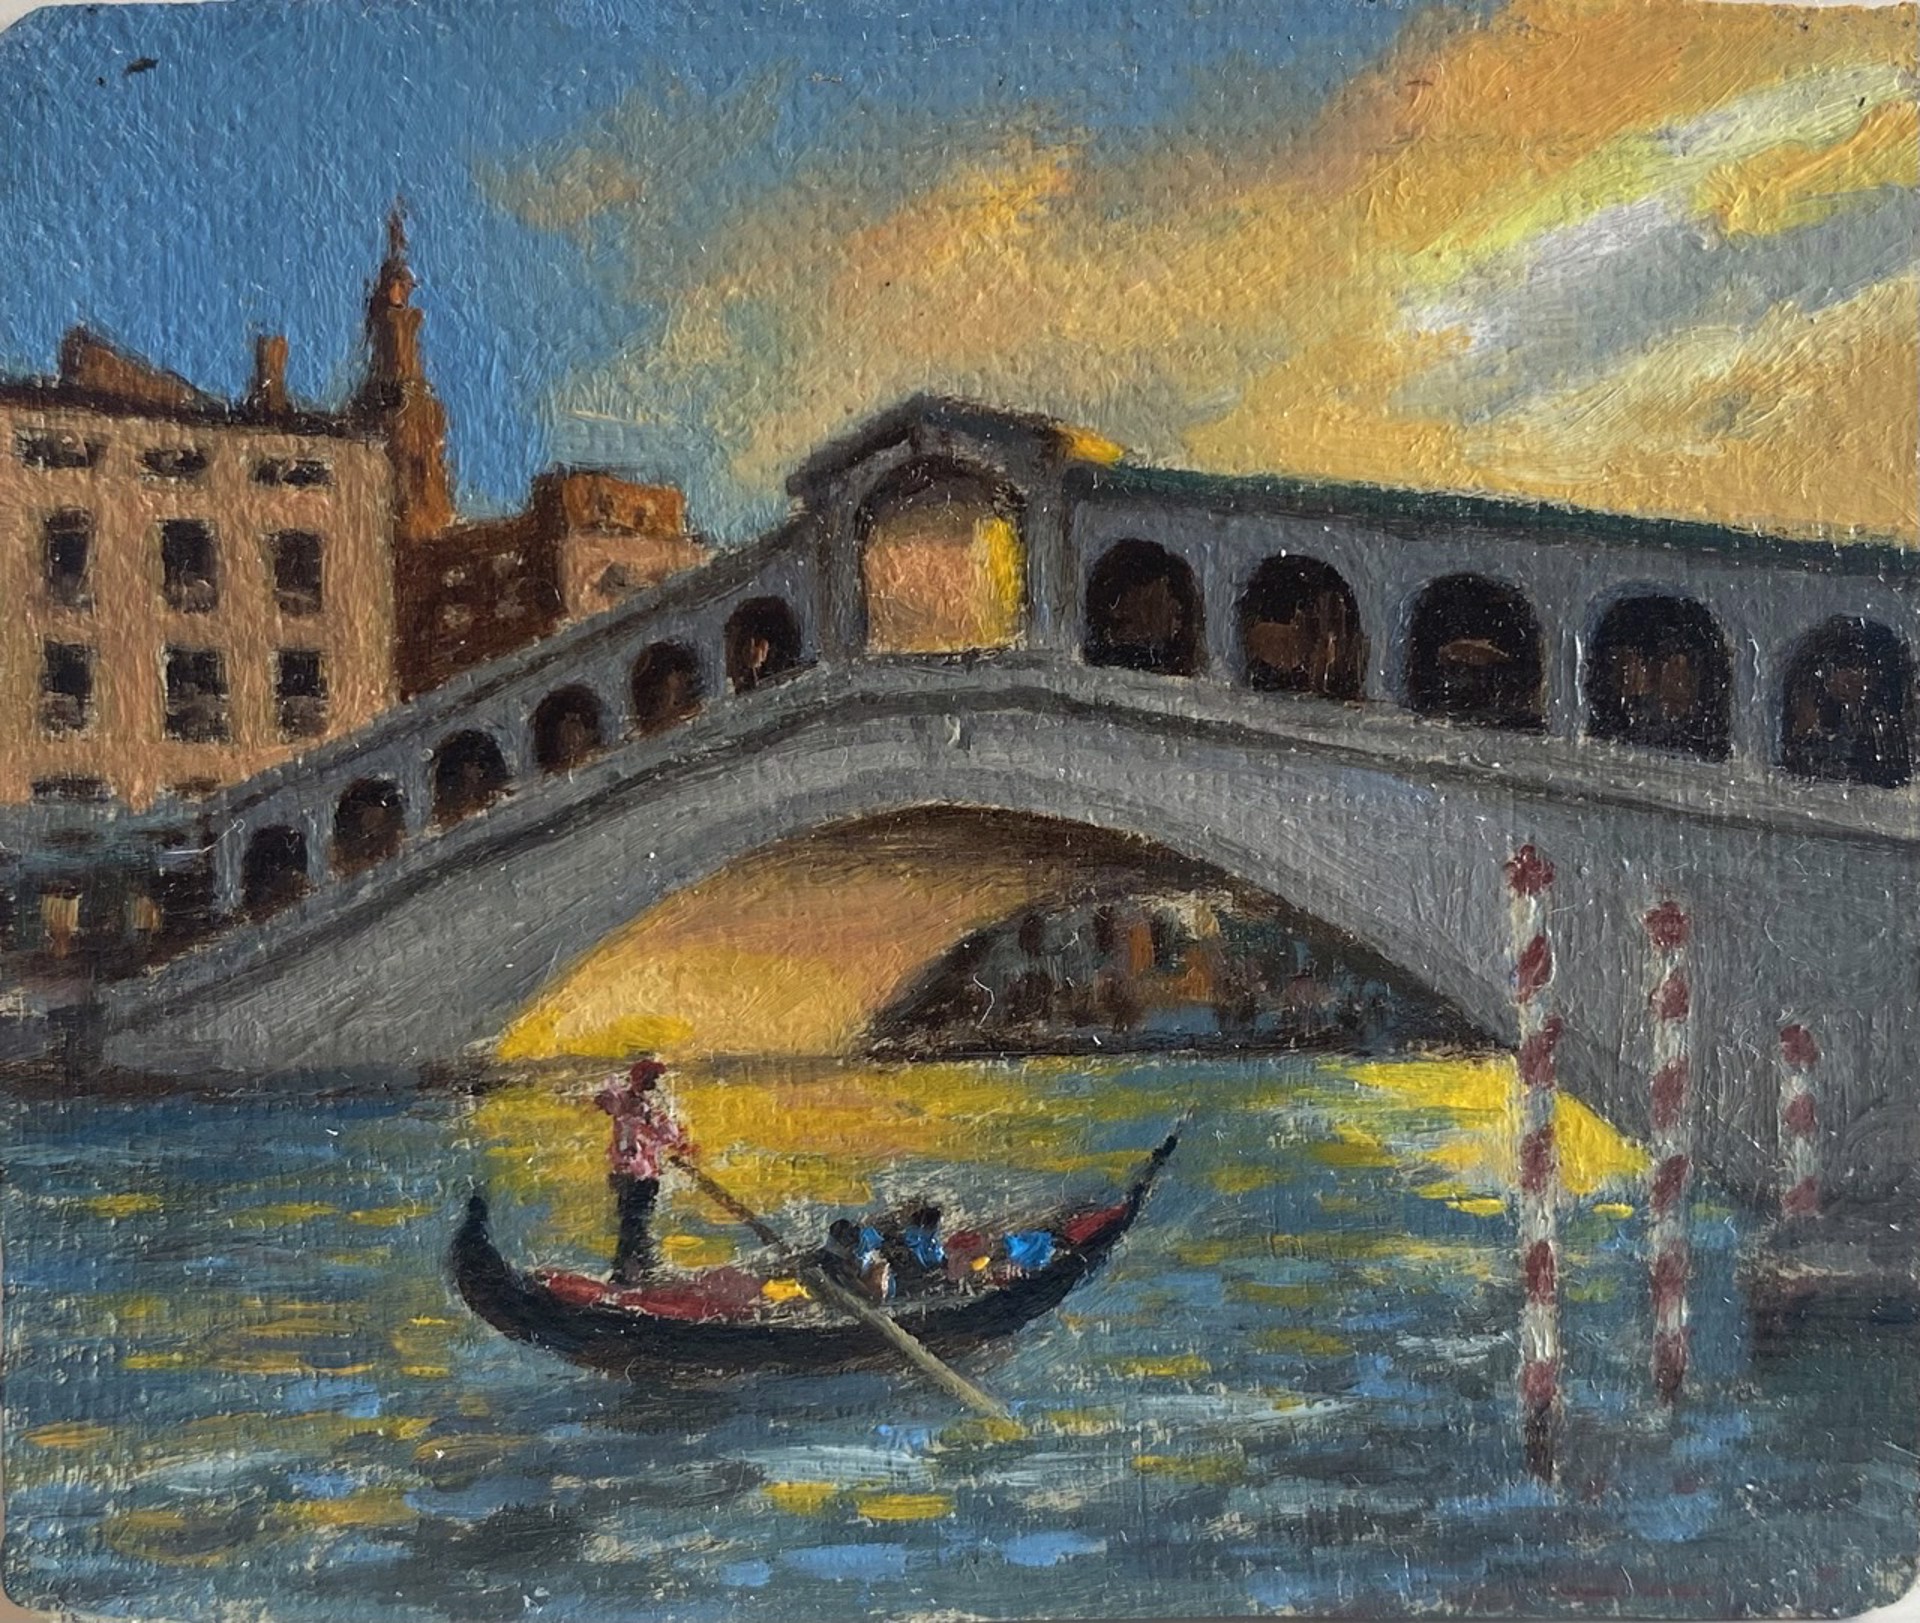 Rowing Under the Bridge by Ben Xu